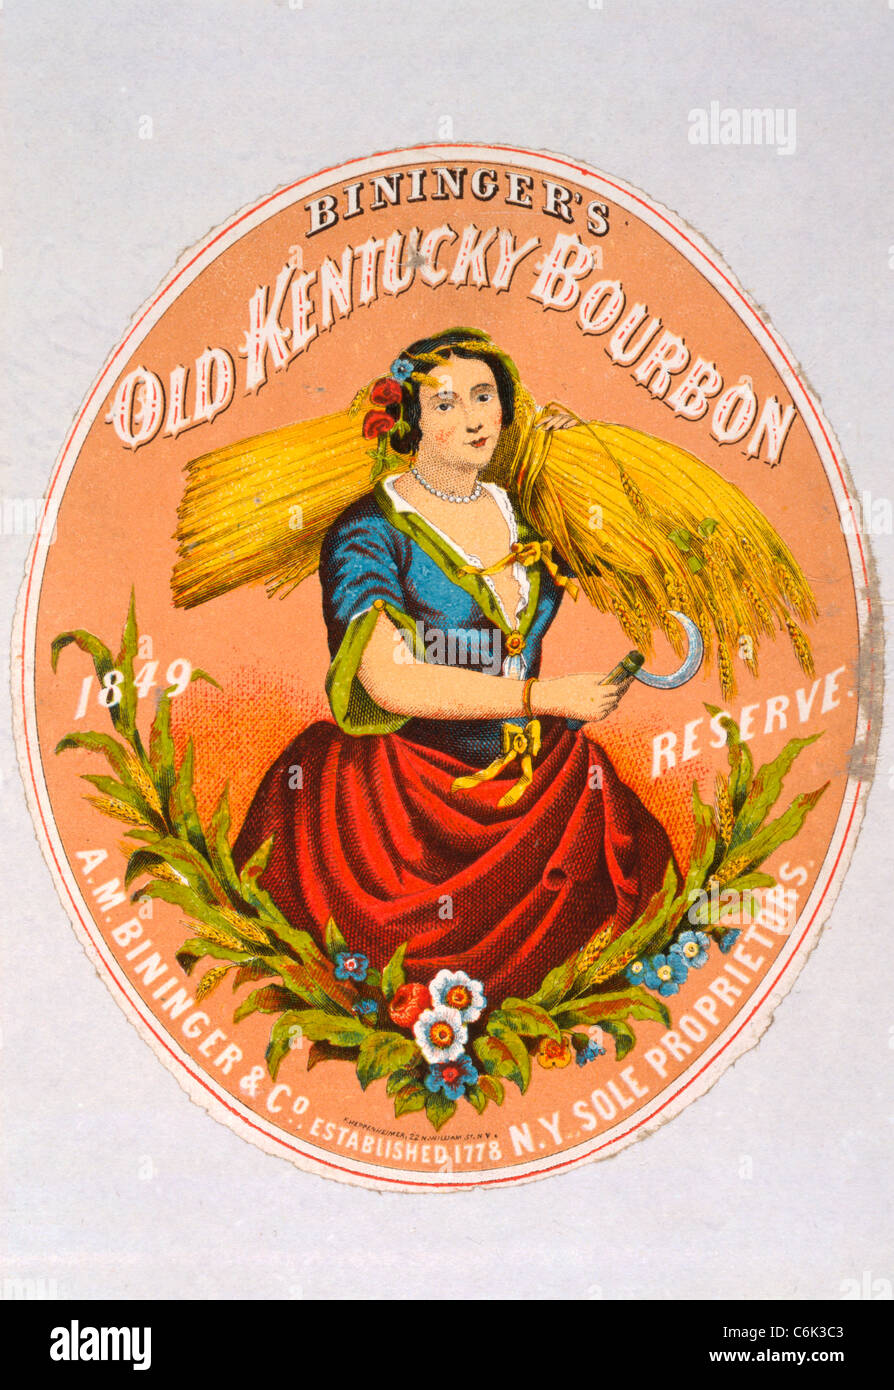 Bininger's Old Kentucky Bourbon, H00 Bininger & Co., New York) les propriétaires uniques / F. Heppenheimer, N.Y. 1860 Bourbon annonce Banque D'Images